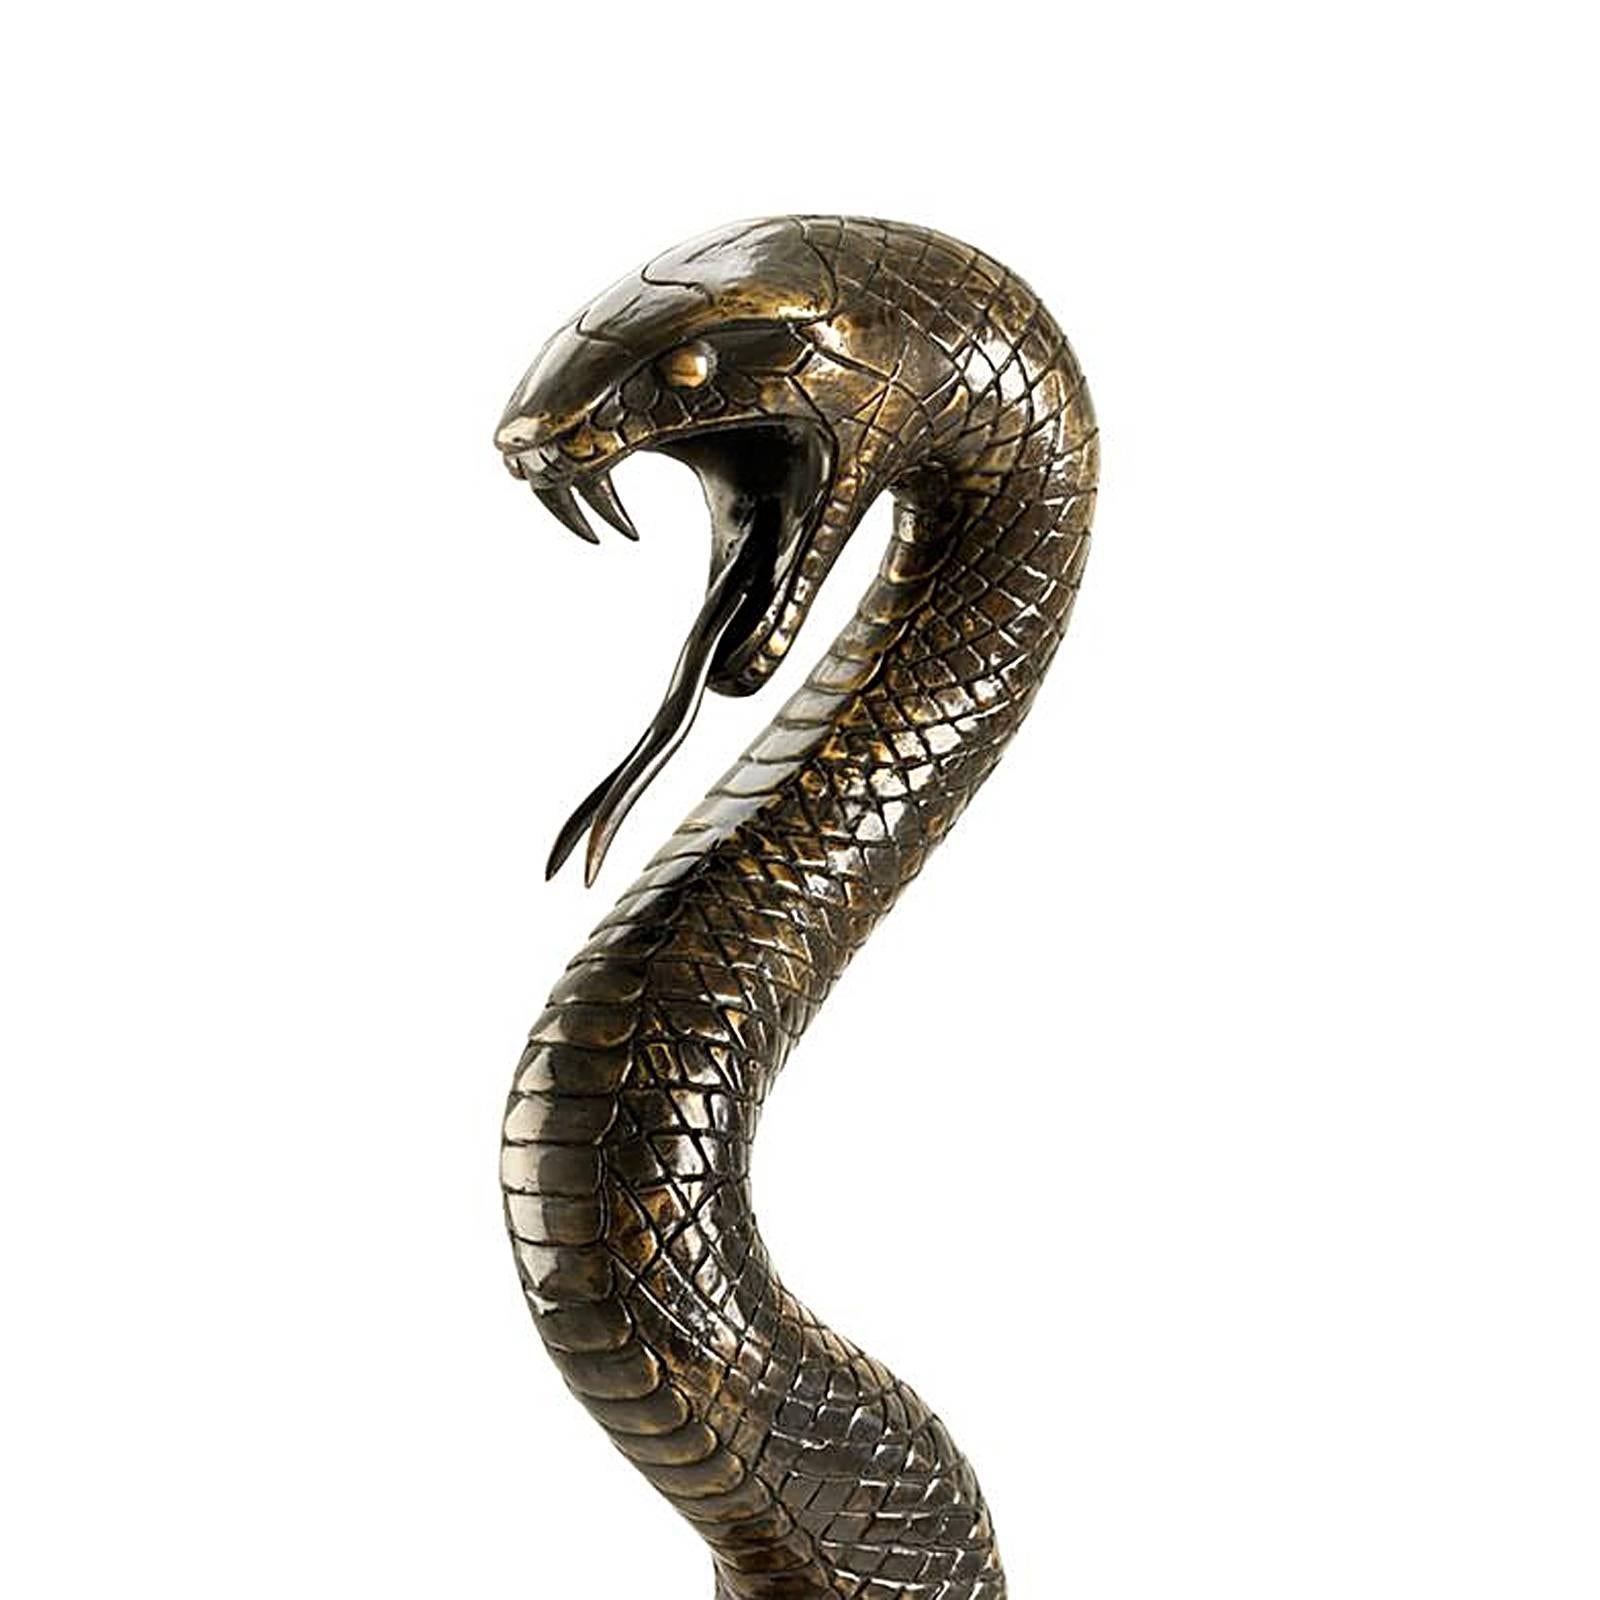 Snake Sculpture in Solid Bronze 1